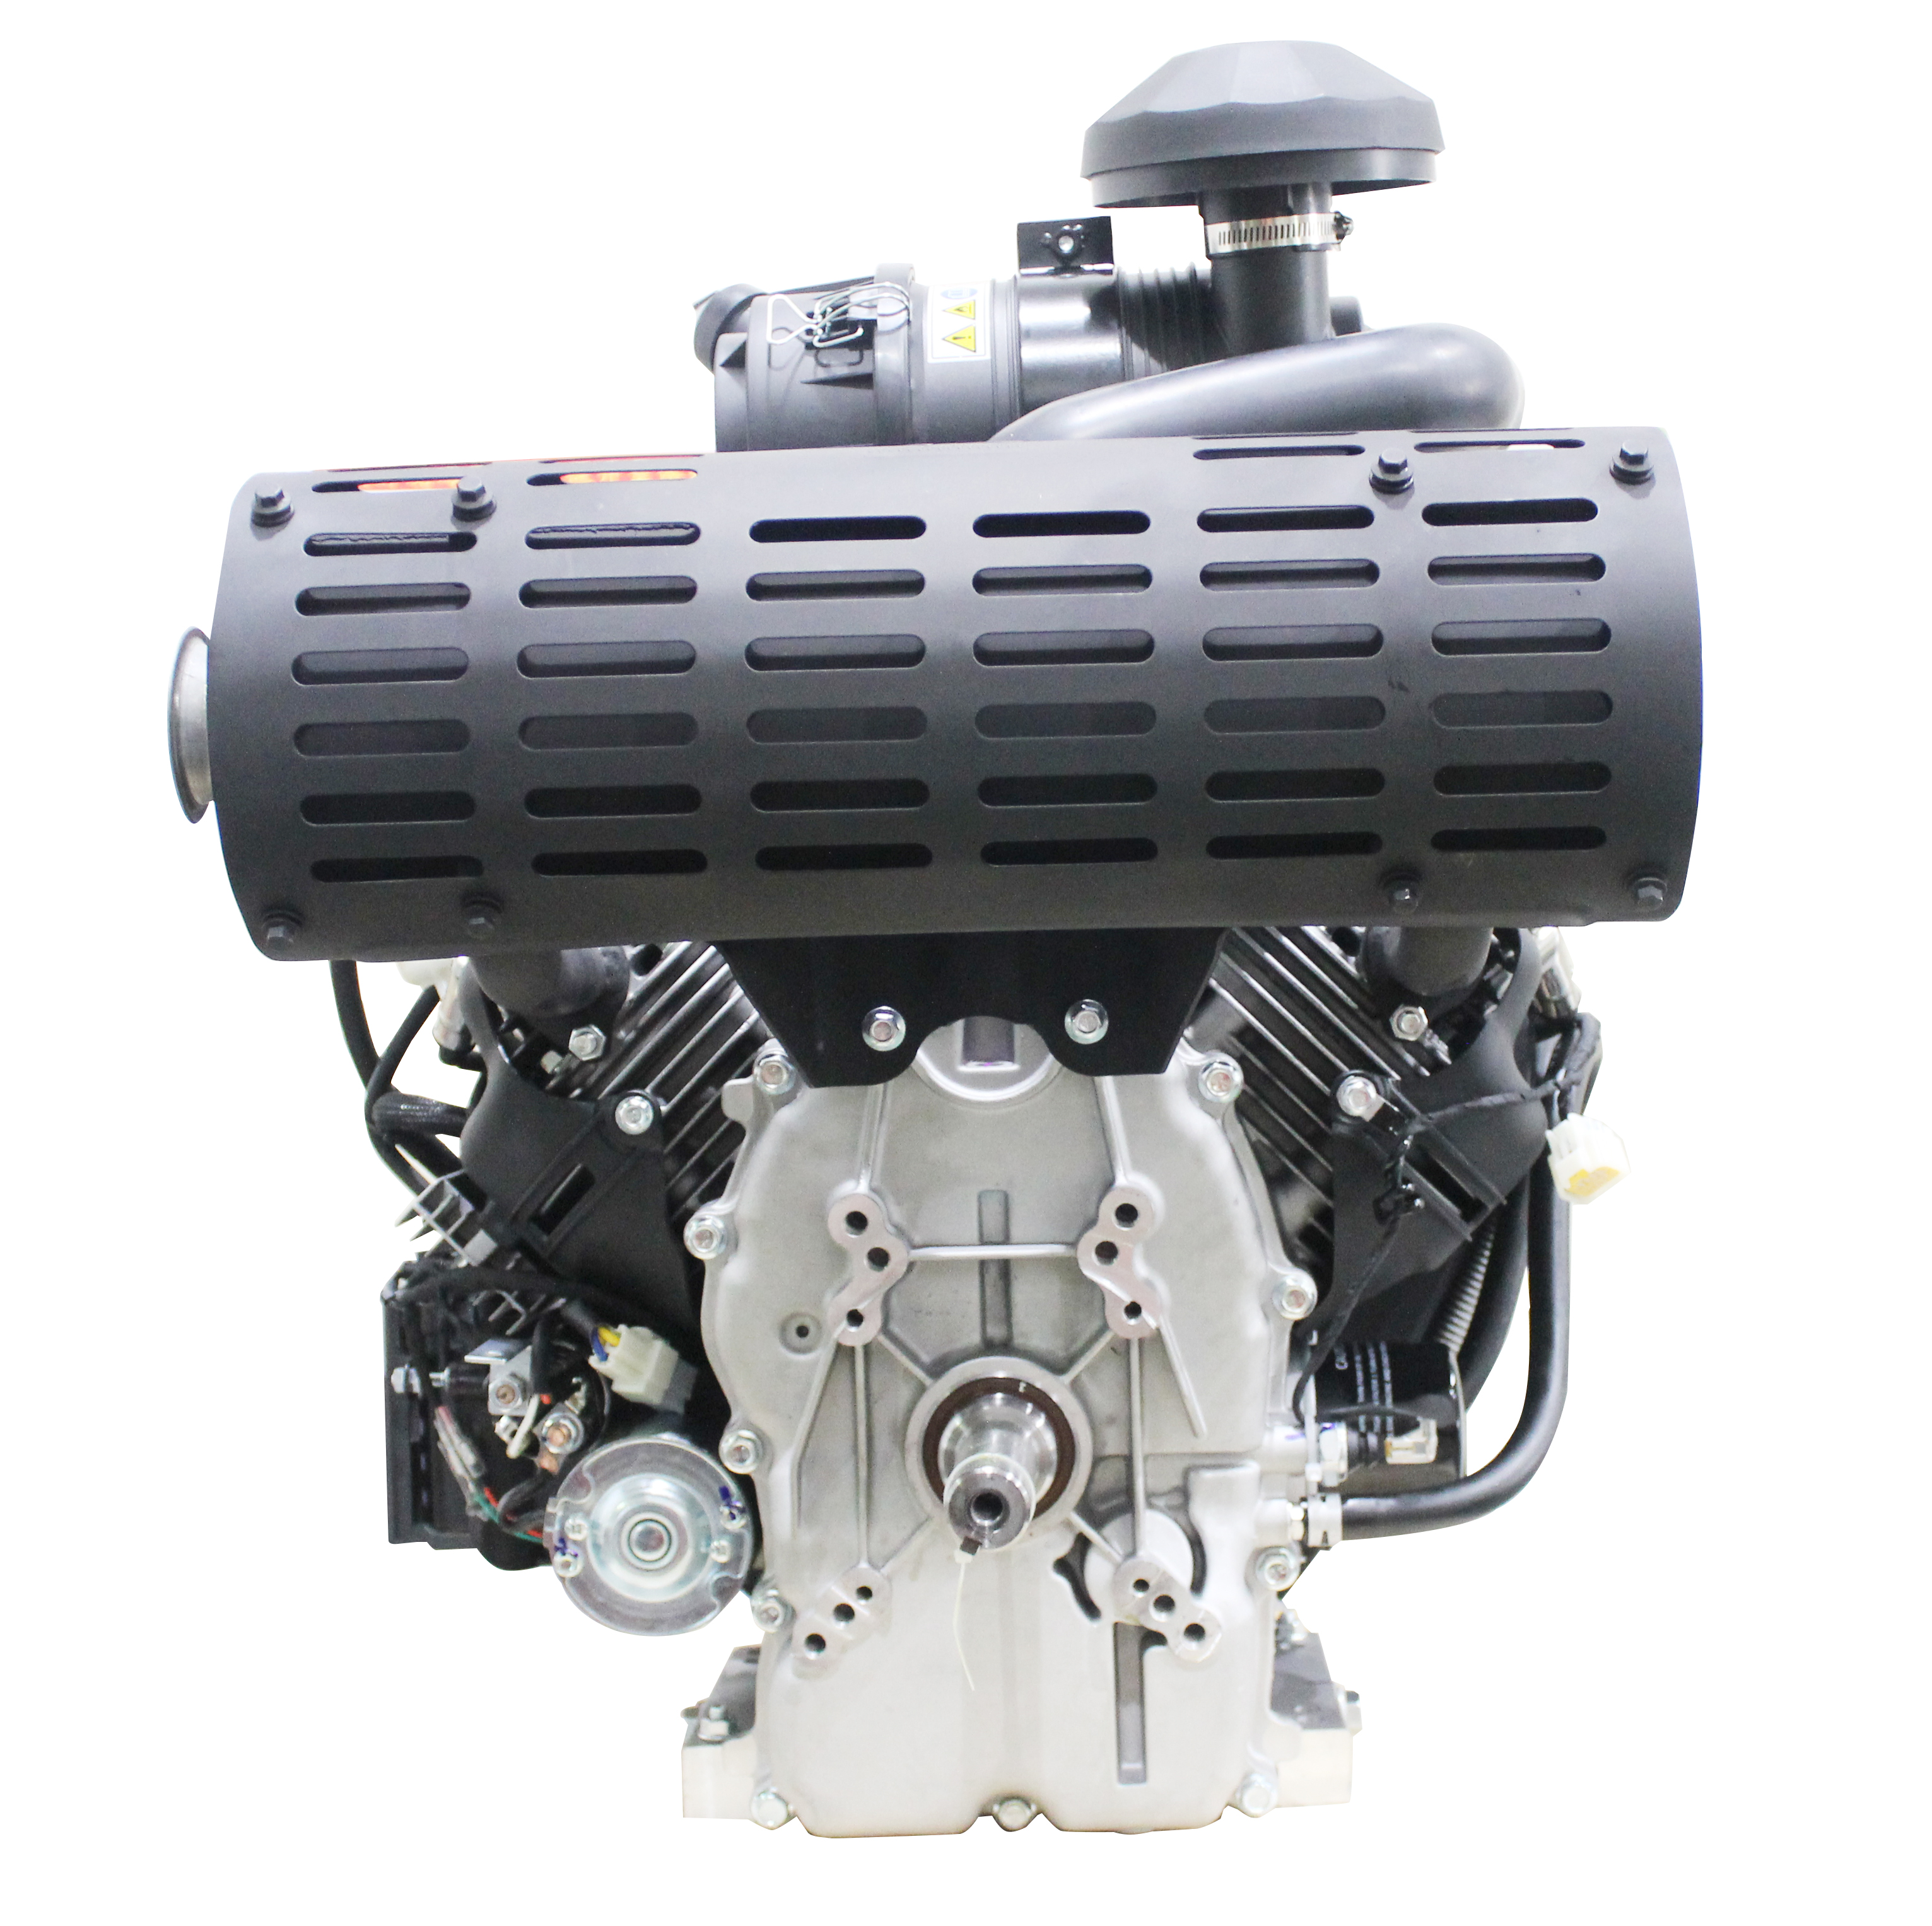 Motor a gasolina horizontal de cilindro duplo 999CC 40HP EFI V refrigerado a ar com CE EPA EURO-V